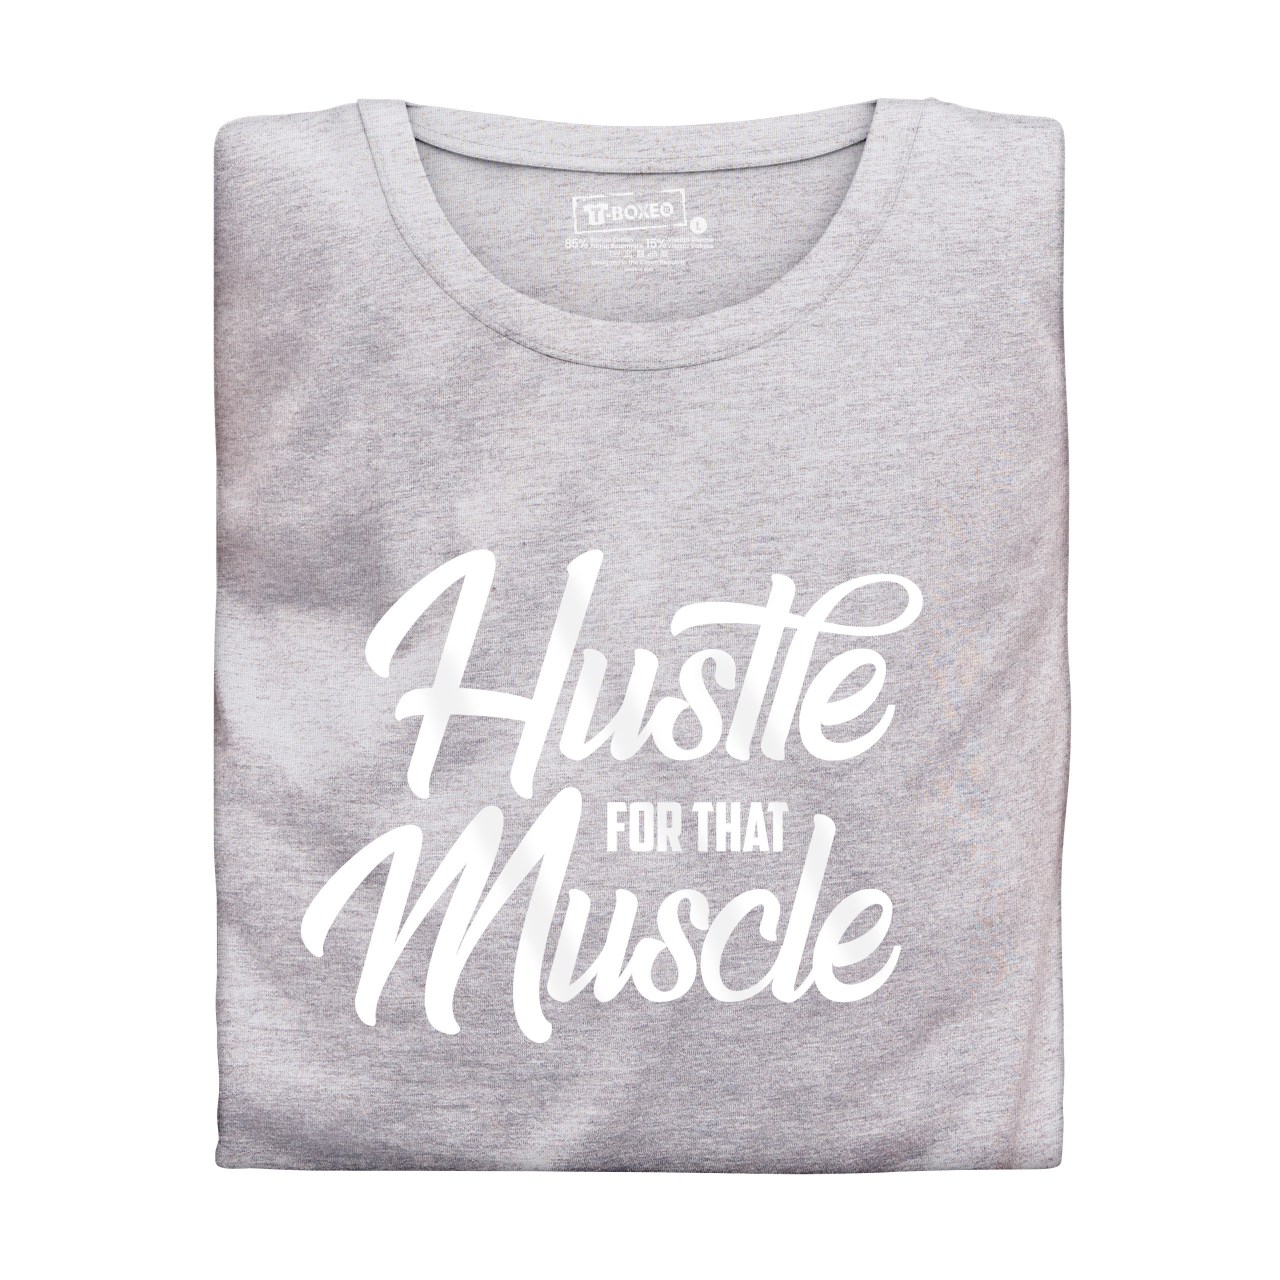 Pánské tričko s potiskem “Hustle for that Muscle”